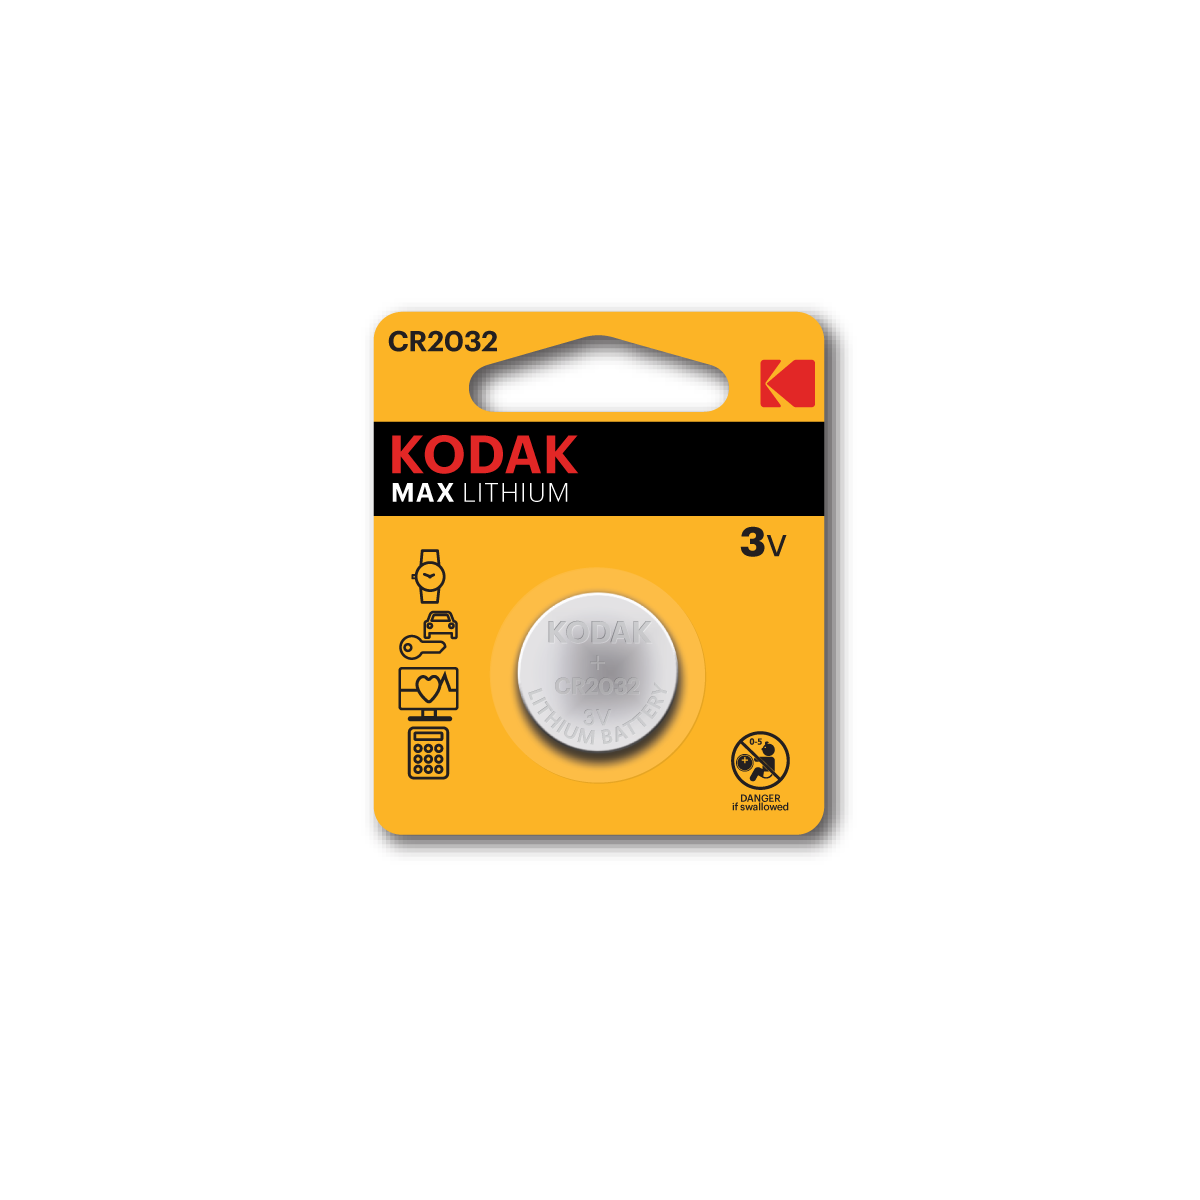 CR2032 Kodak